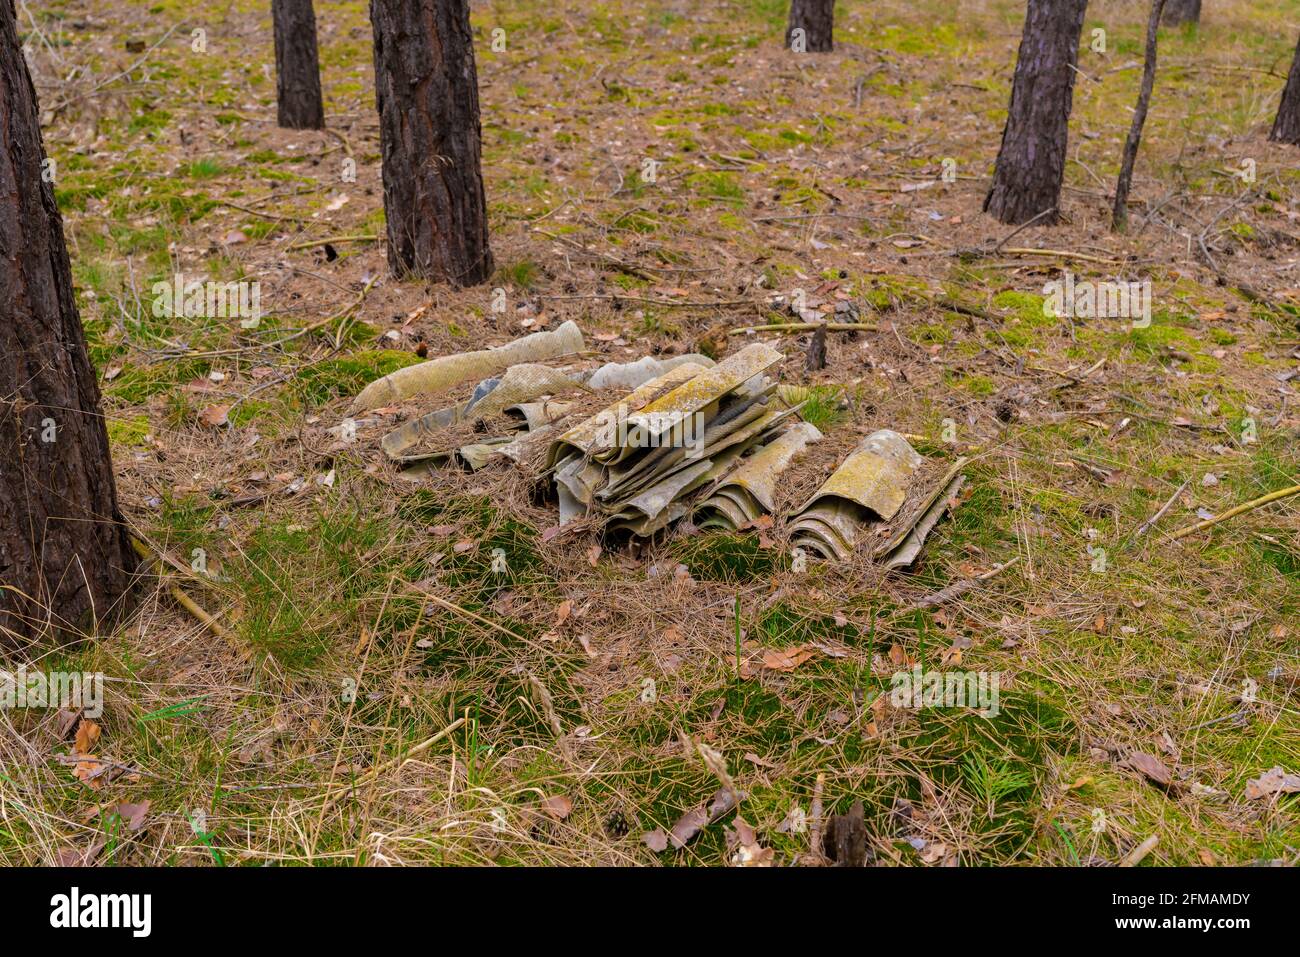 Desechos de asbesto eliminados ilegalmente en el bosque, desechos tóxicos Foto de stock